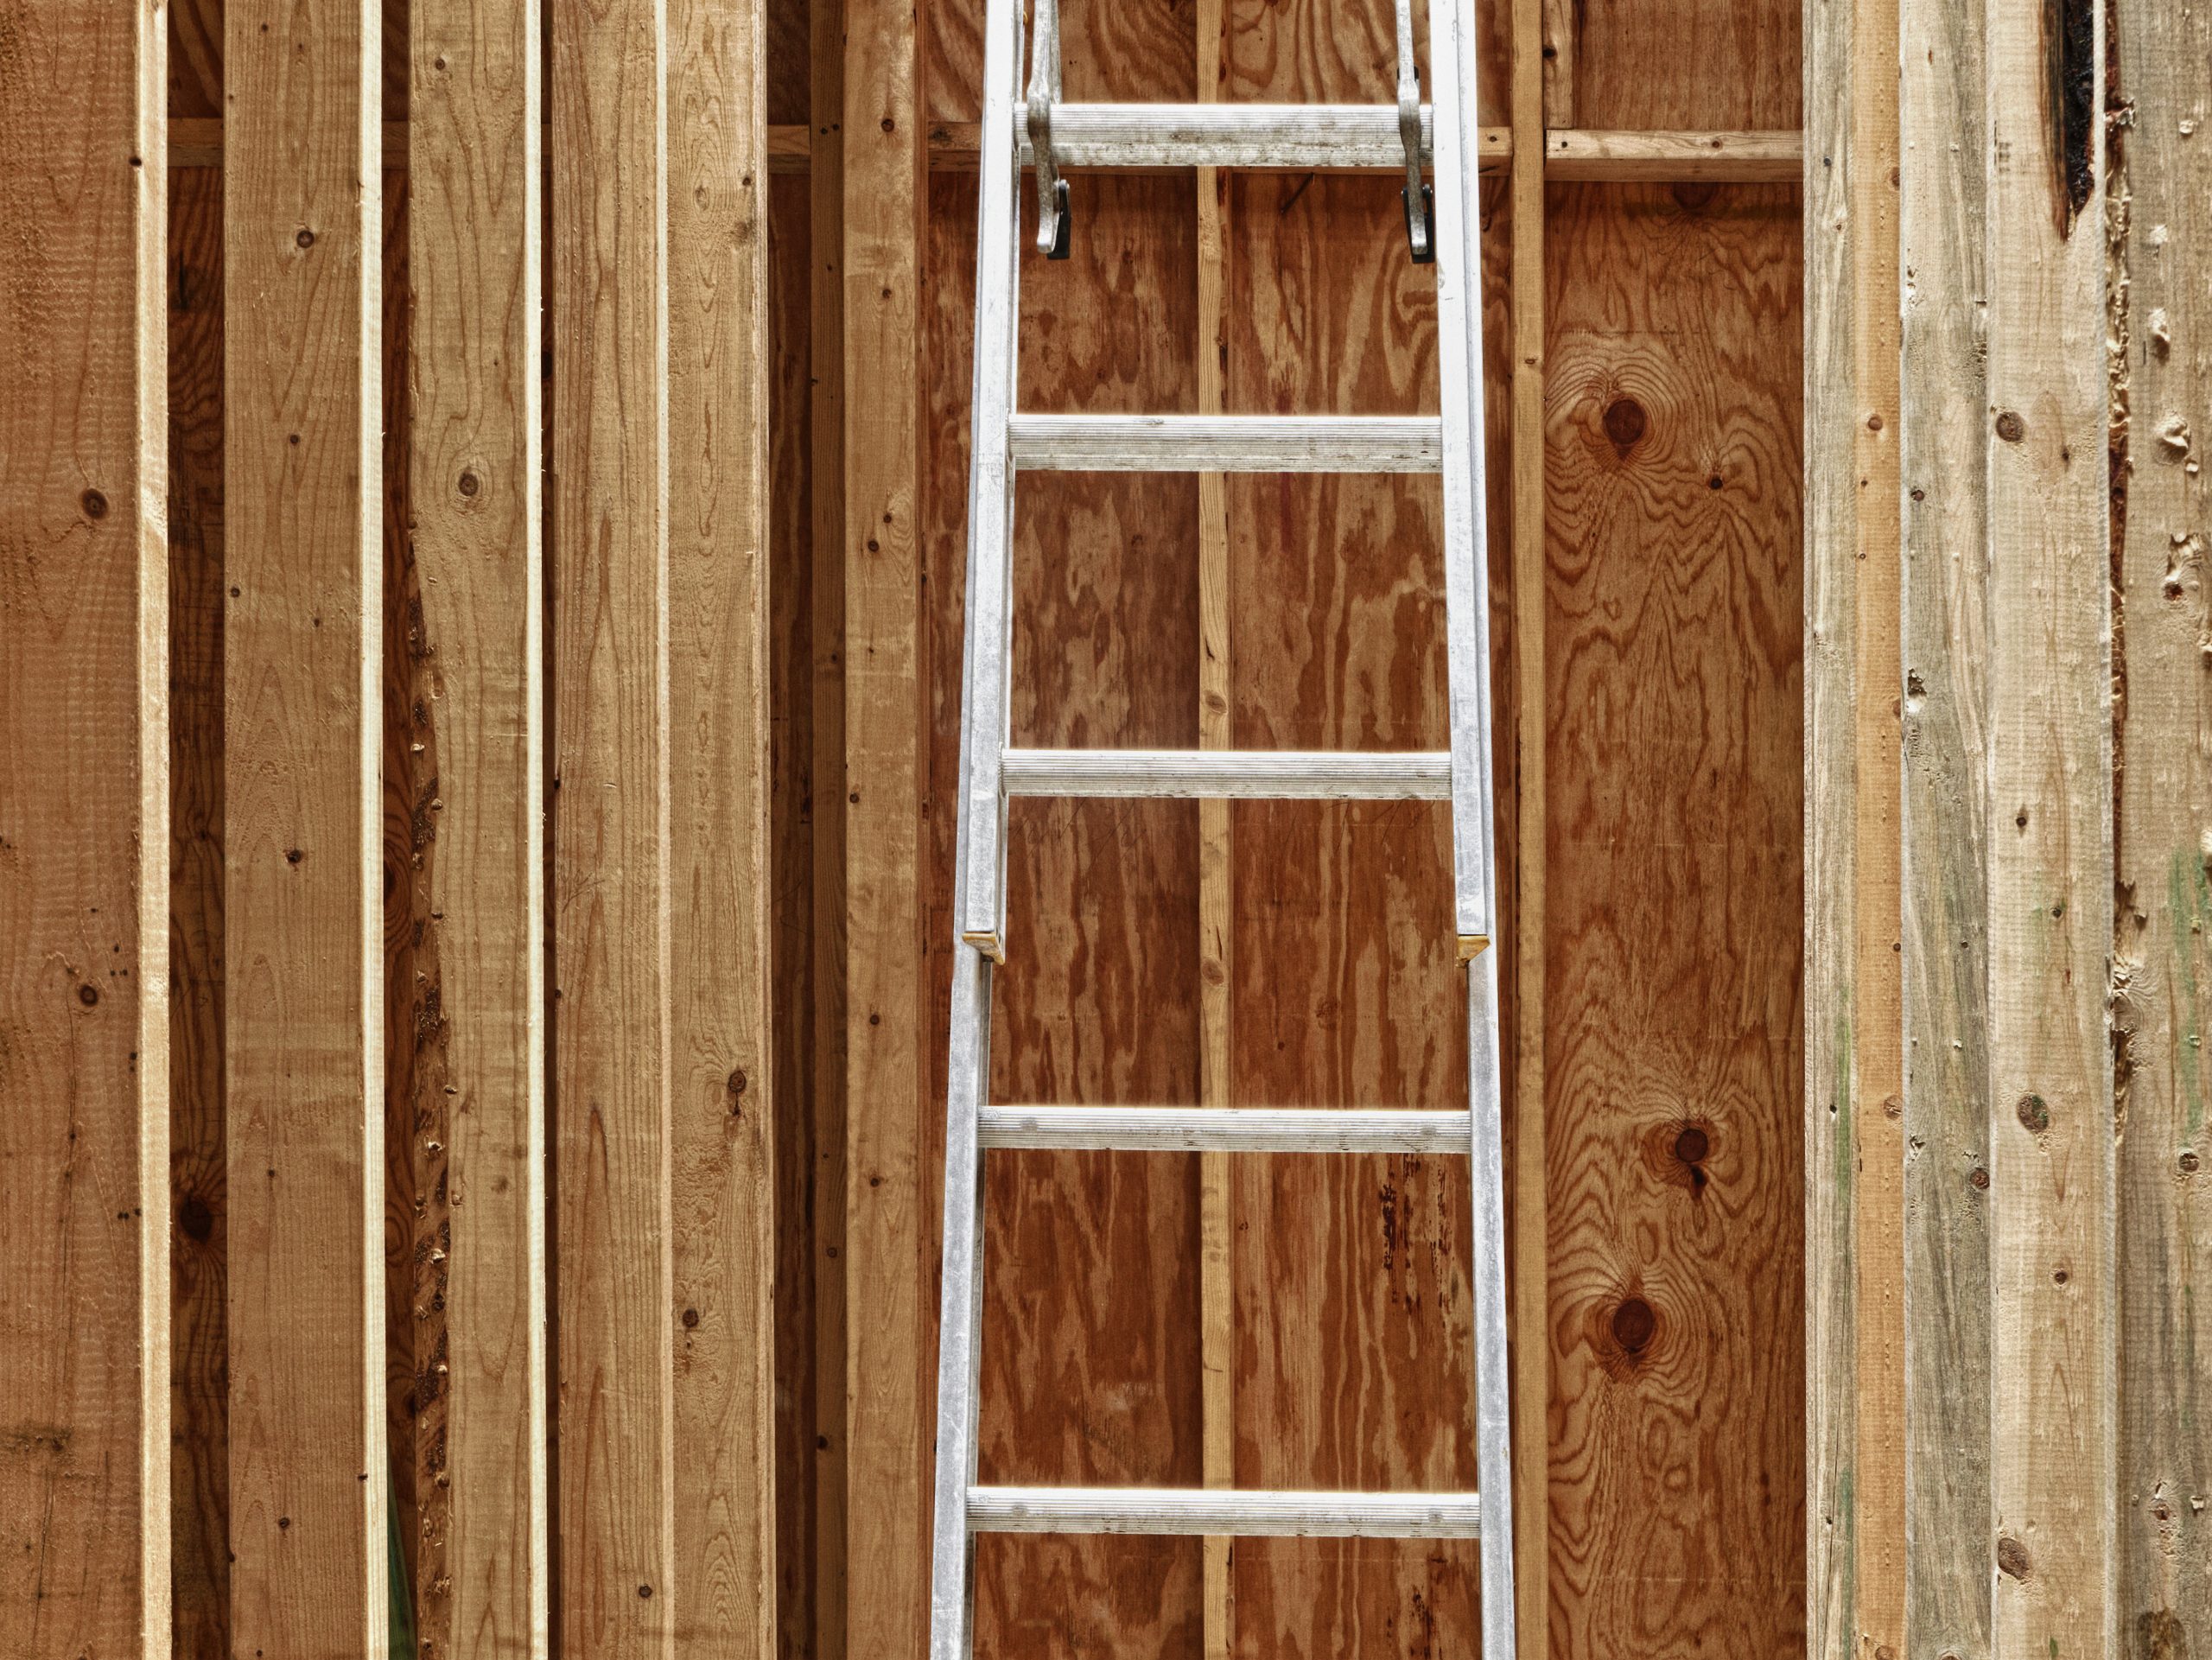 Stolen Extension Ladder